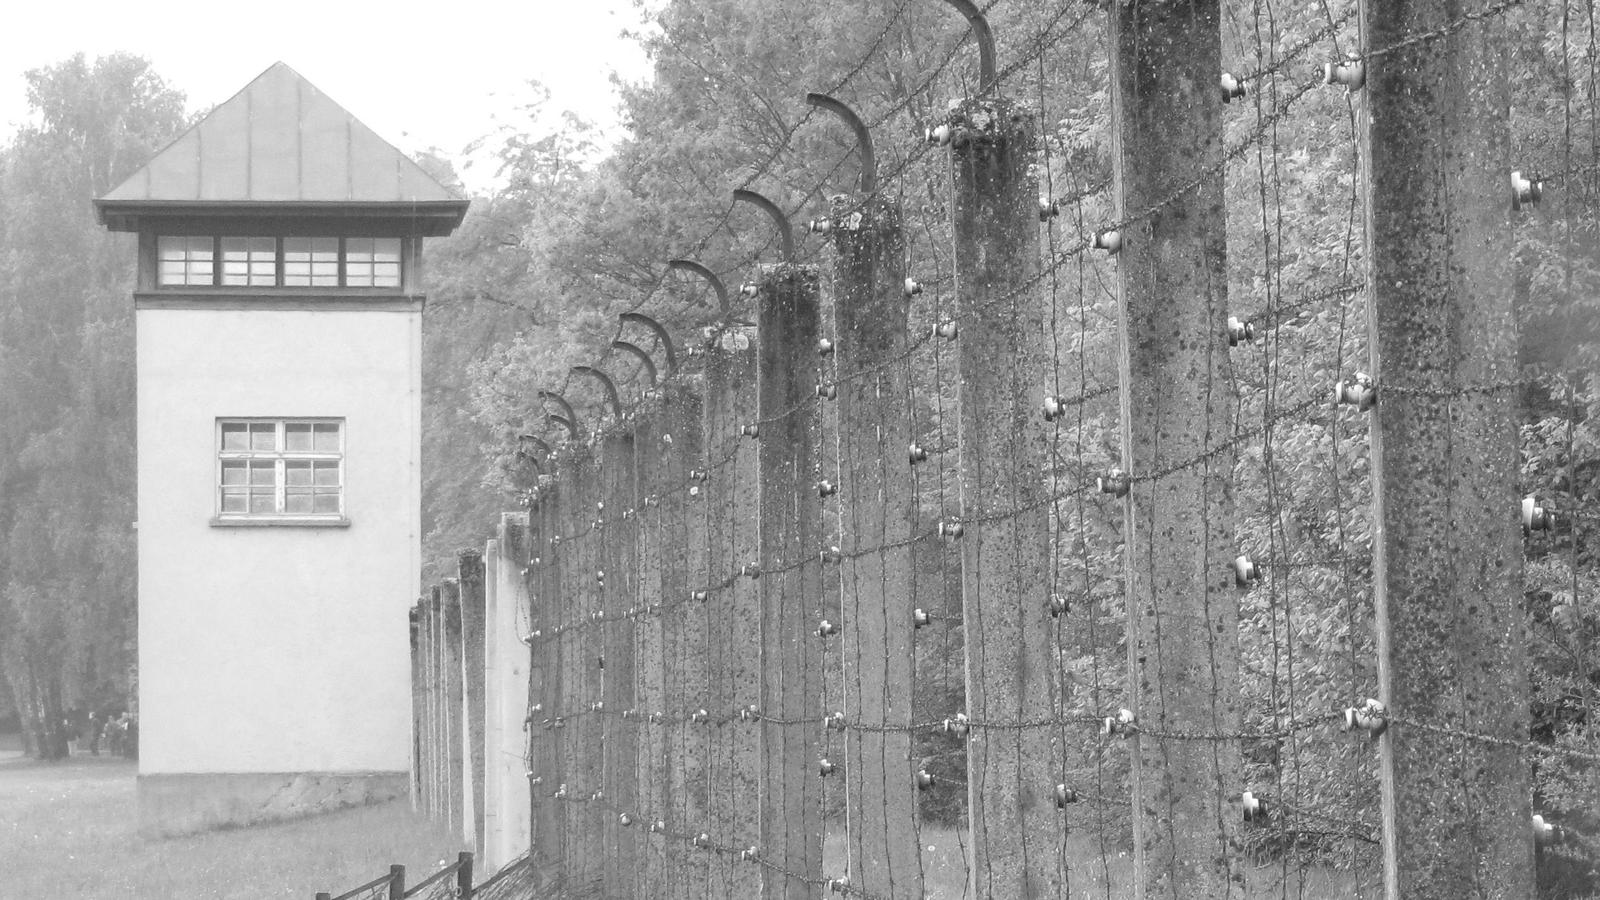 KZ-Gedenkstätte Dachau - Wachturm und Zaun.